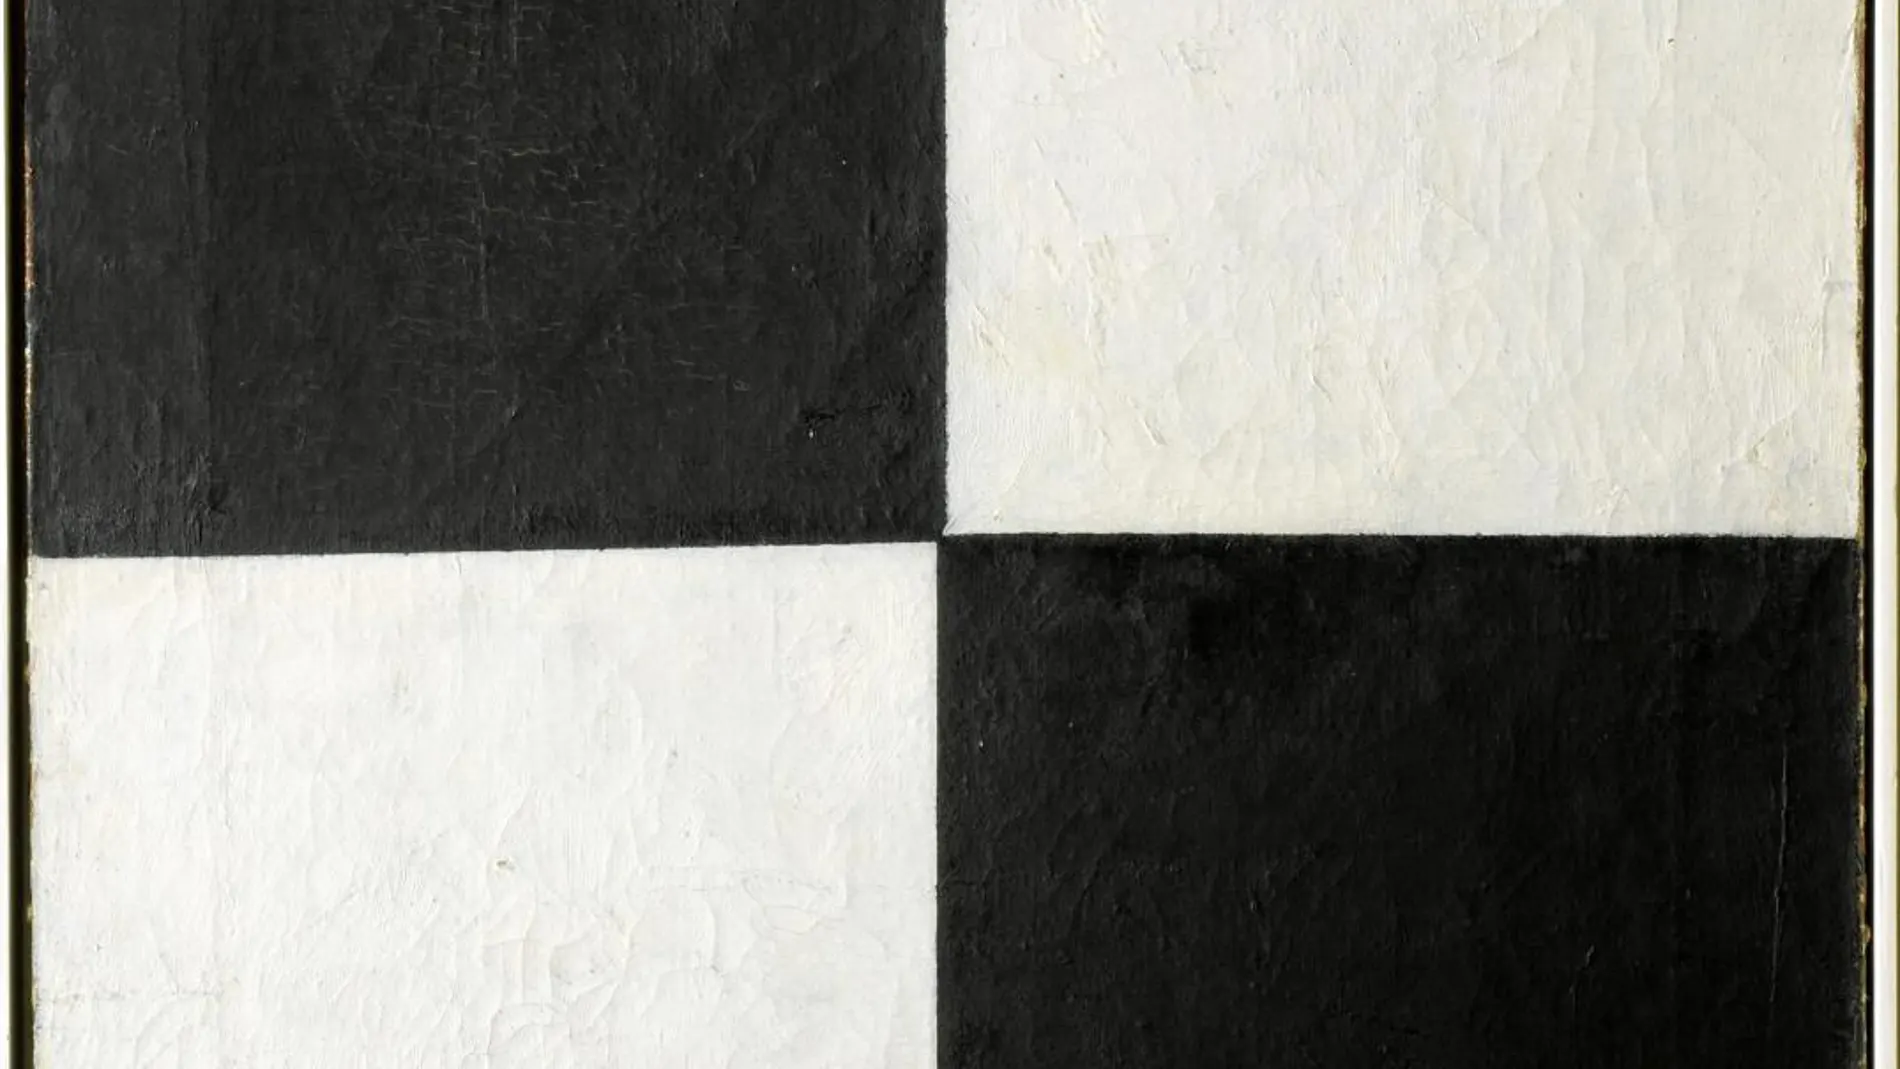 Cuatro cuadrados y dos colores, el blanco y el negro para dar forma a la esencia Dadá. La obra, de Kazimir Malevich, es uno de los emblemas de esta macroexposición